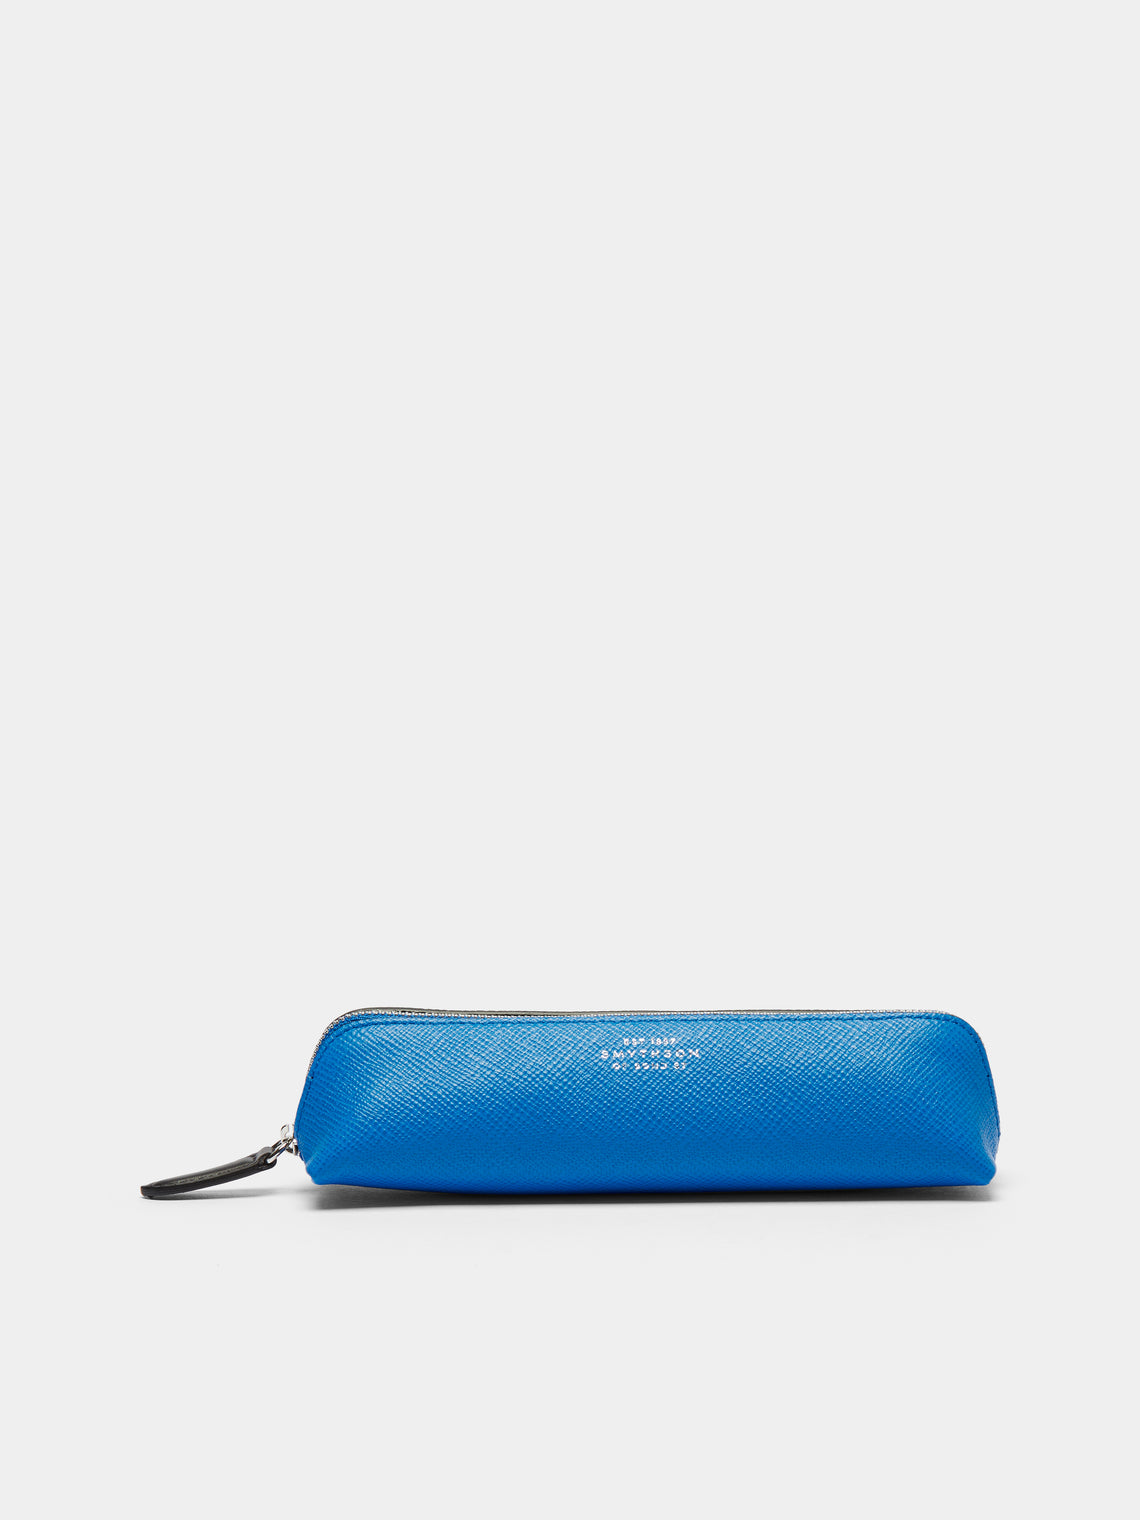 Smythson - Panama Leather Pencil Case - Blue - ABASK